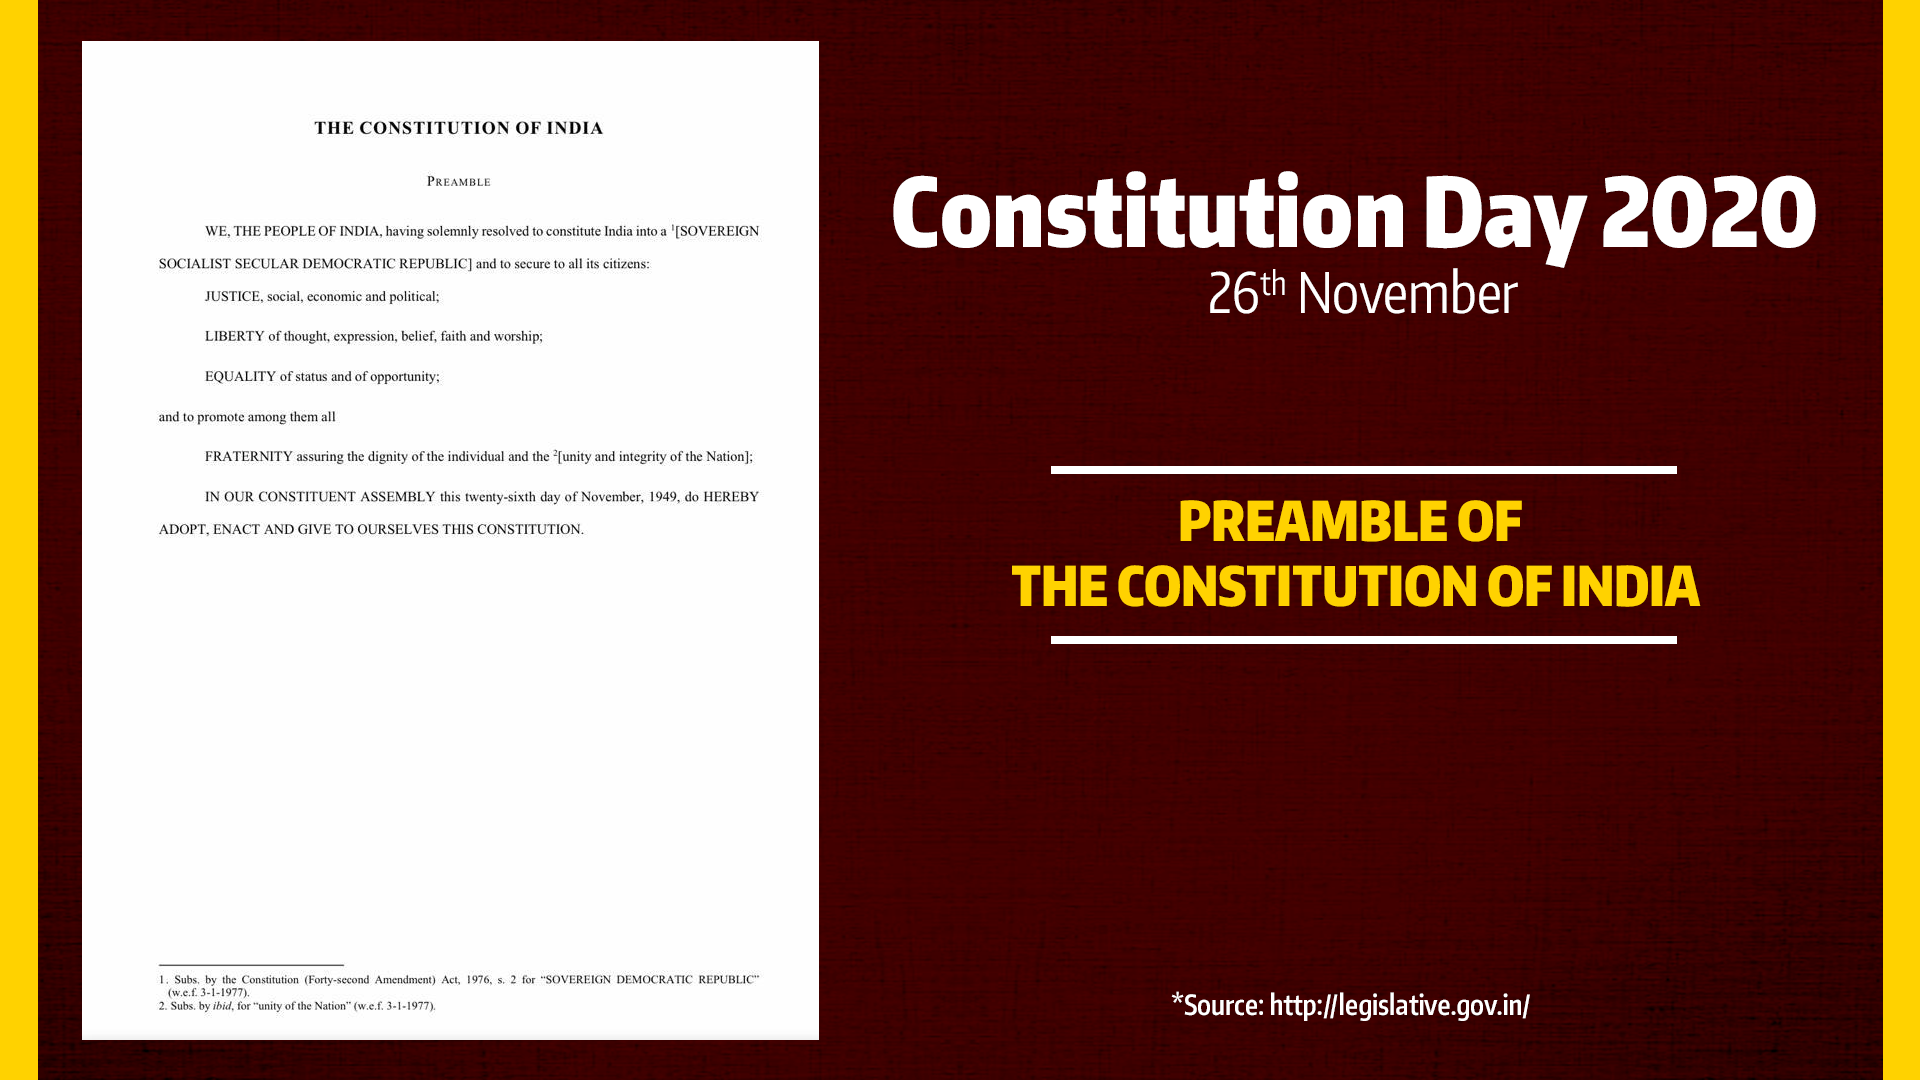 ConstitutionDay